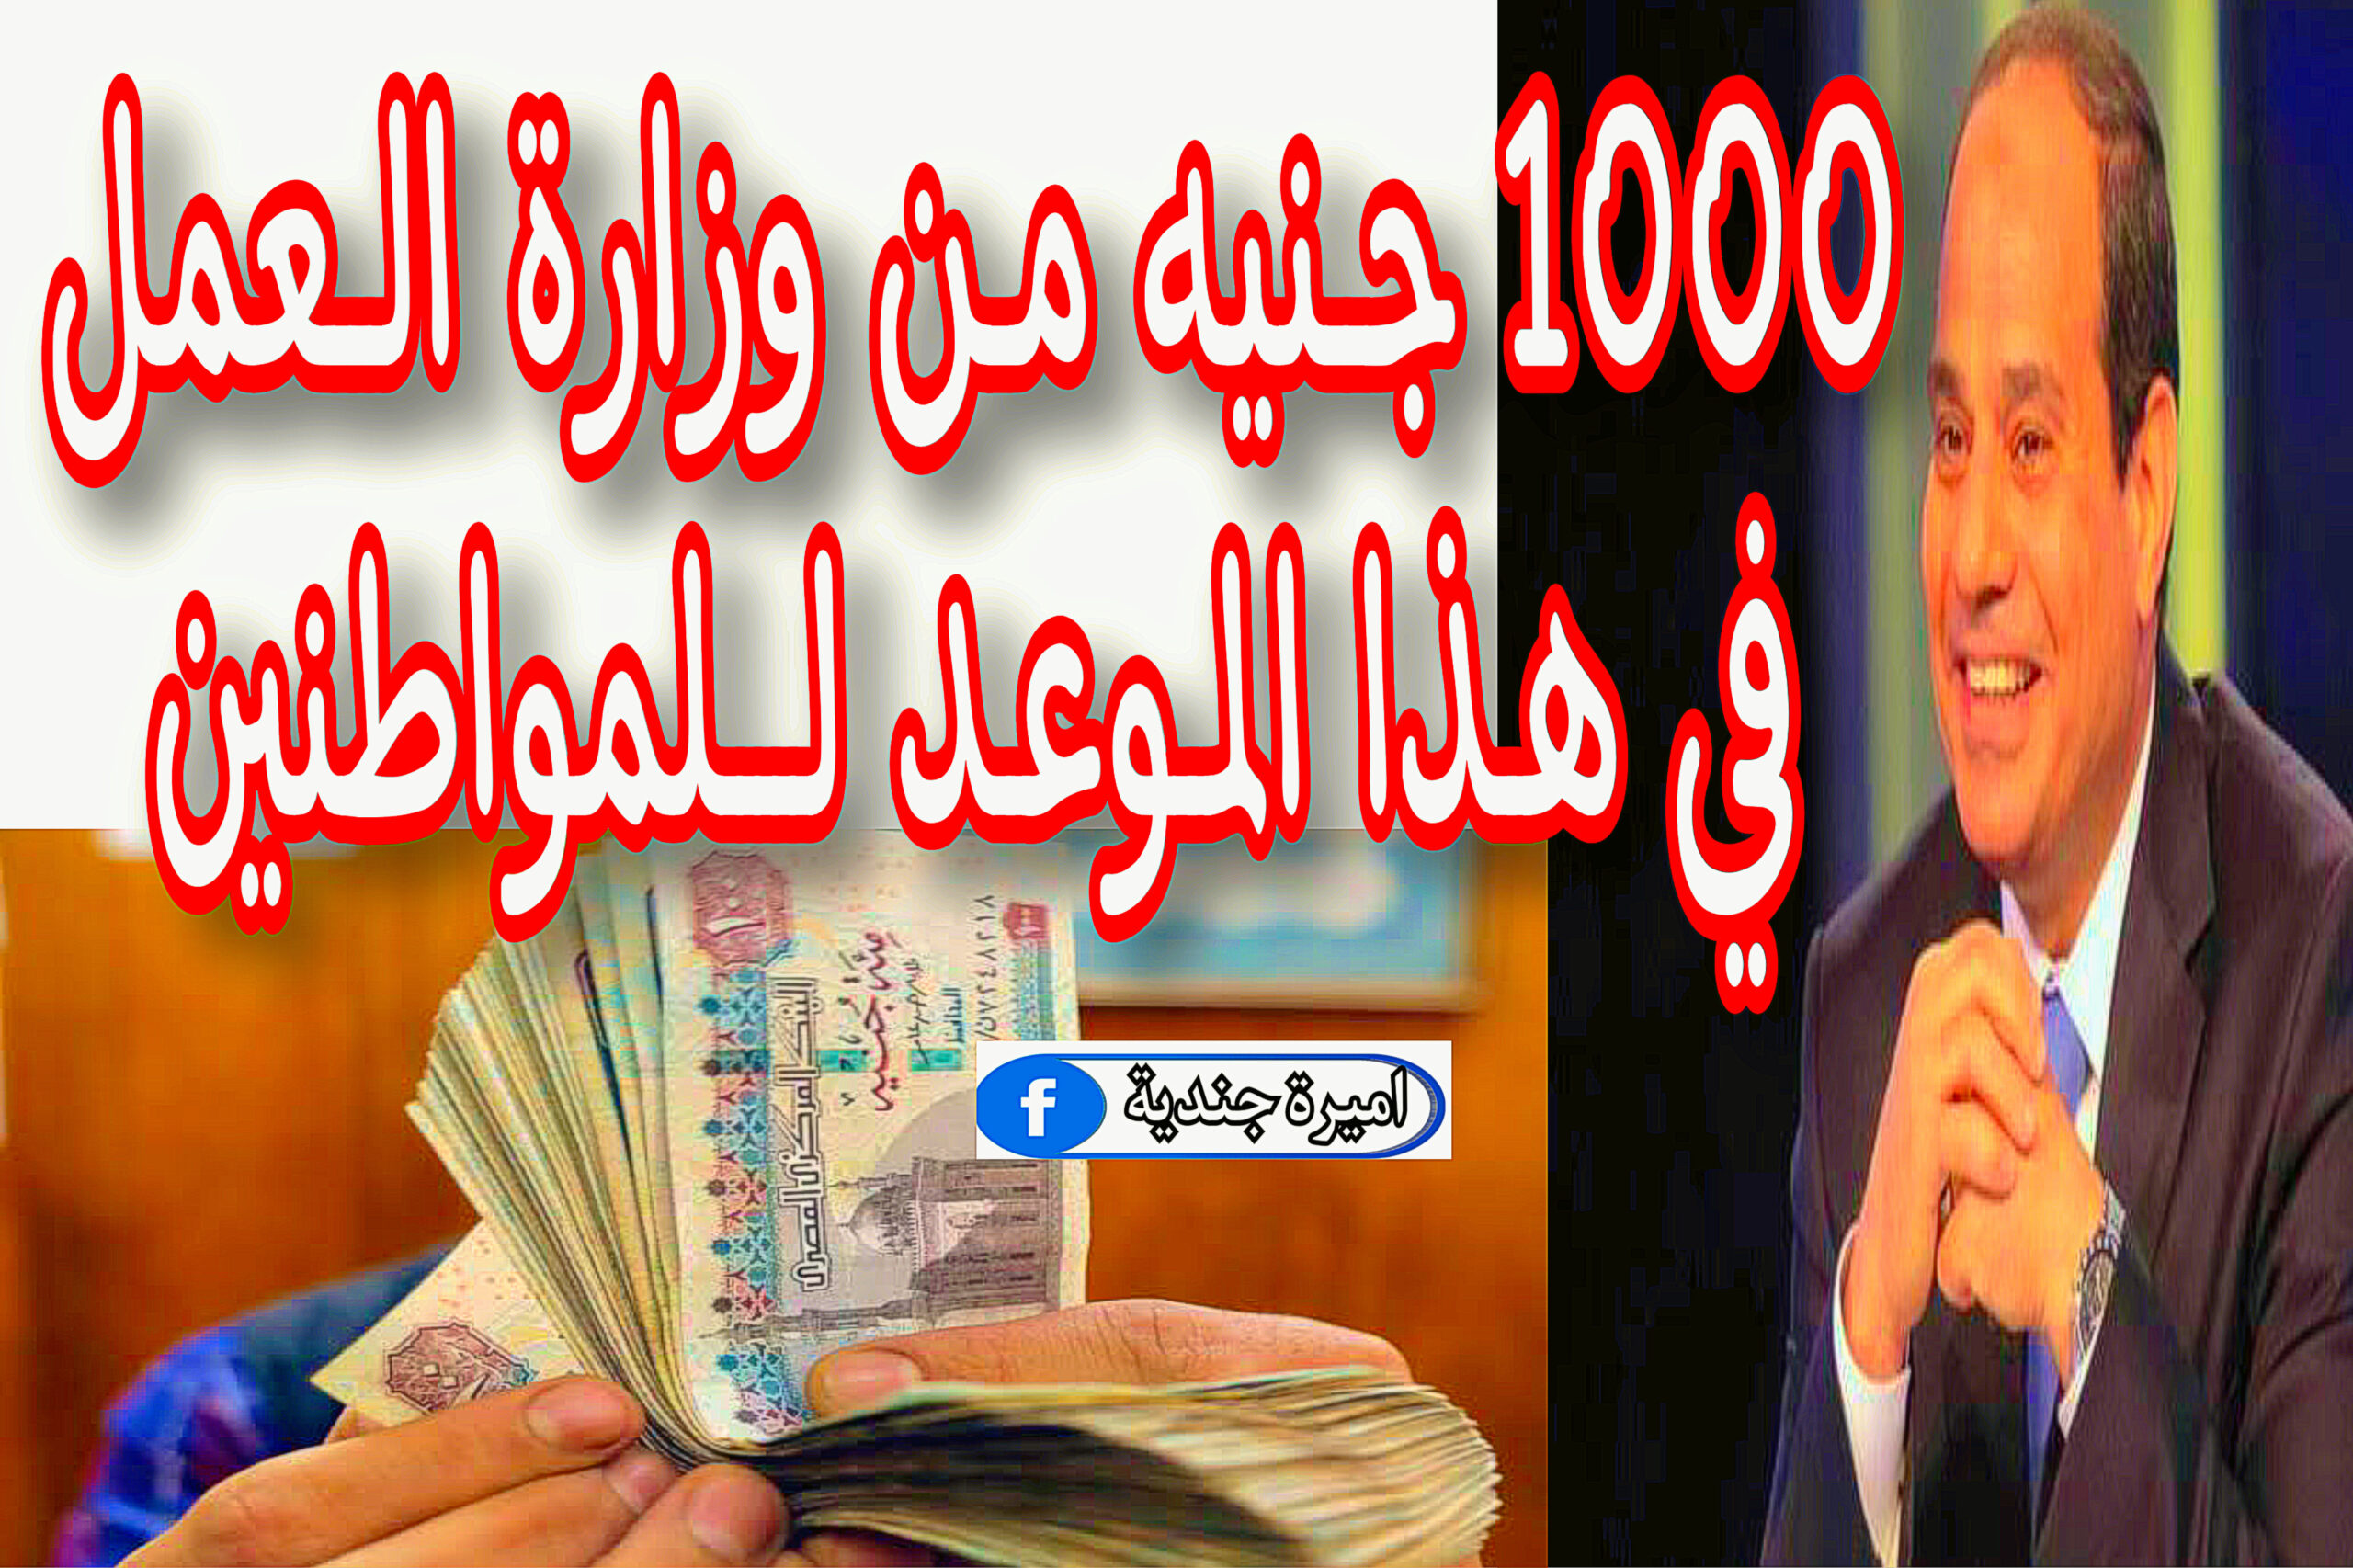 1000 جنيه من وزارة العمل